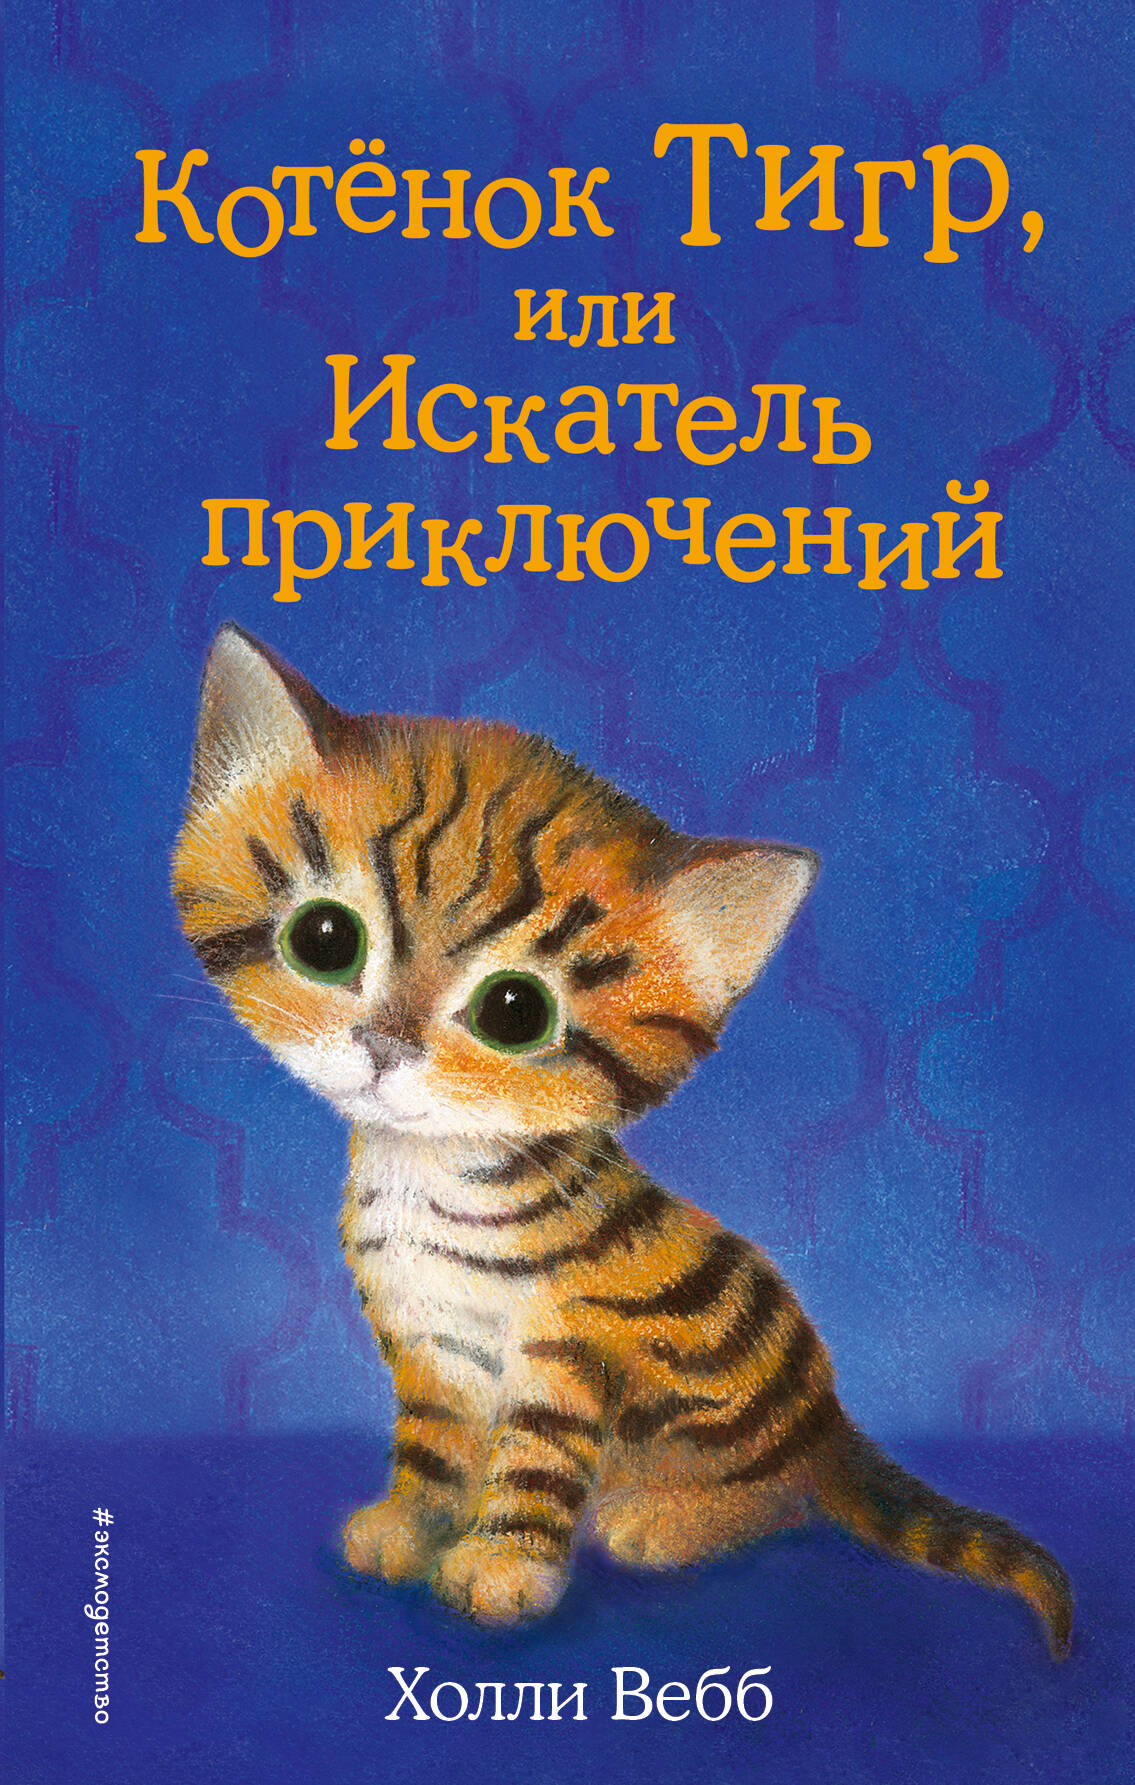 Котёнок Тигр, или Искатель приключений вебб холли котёнок тигр или искатель приключений выпуск 35